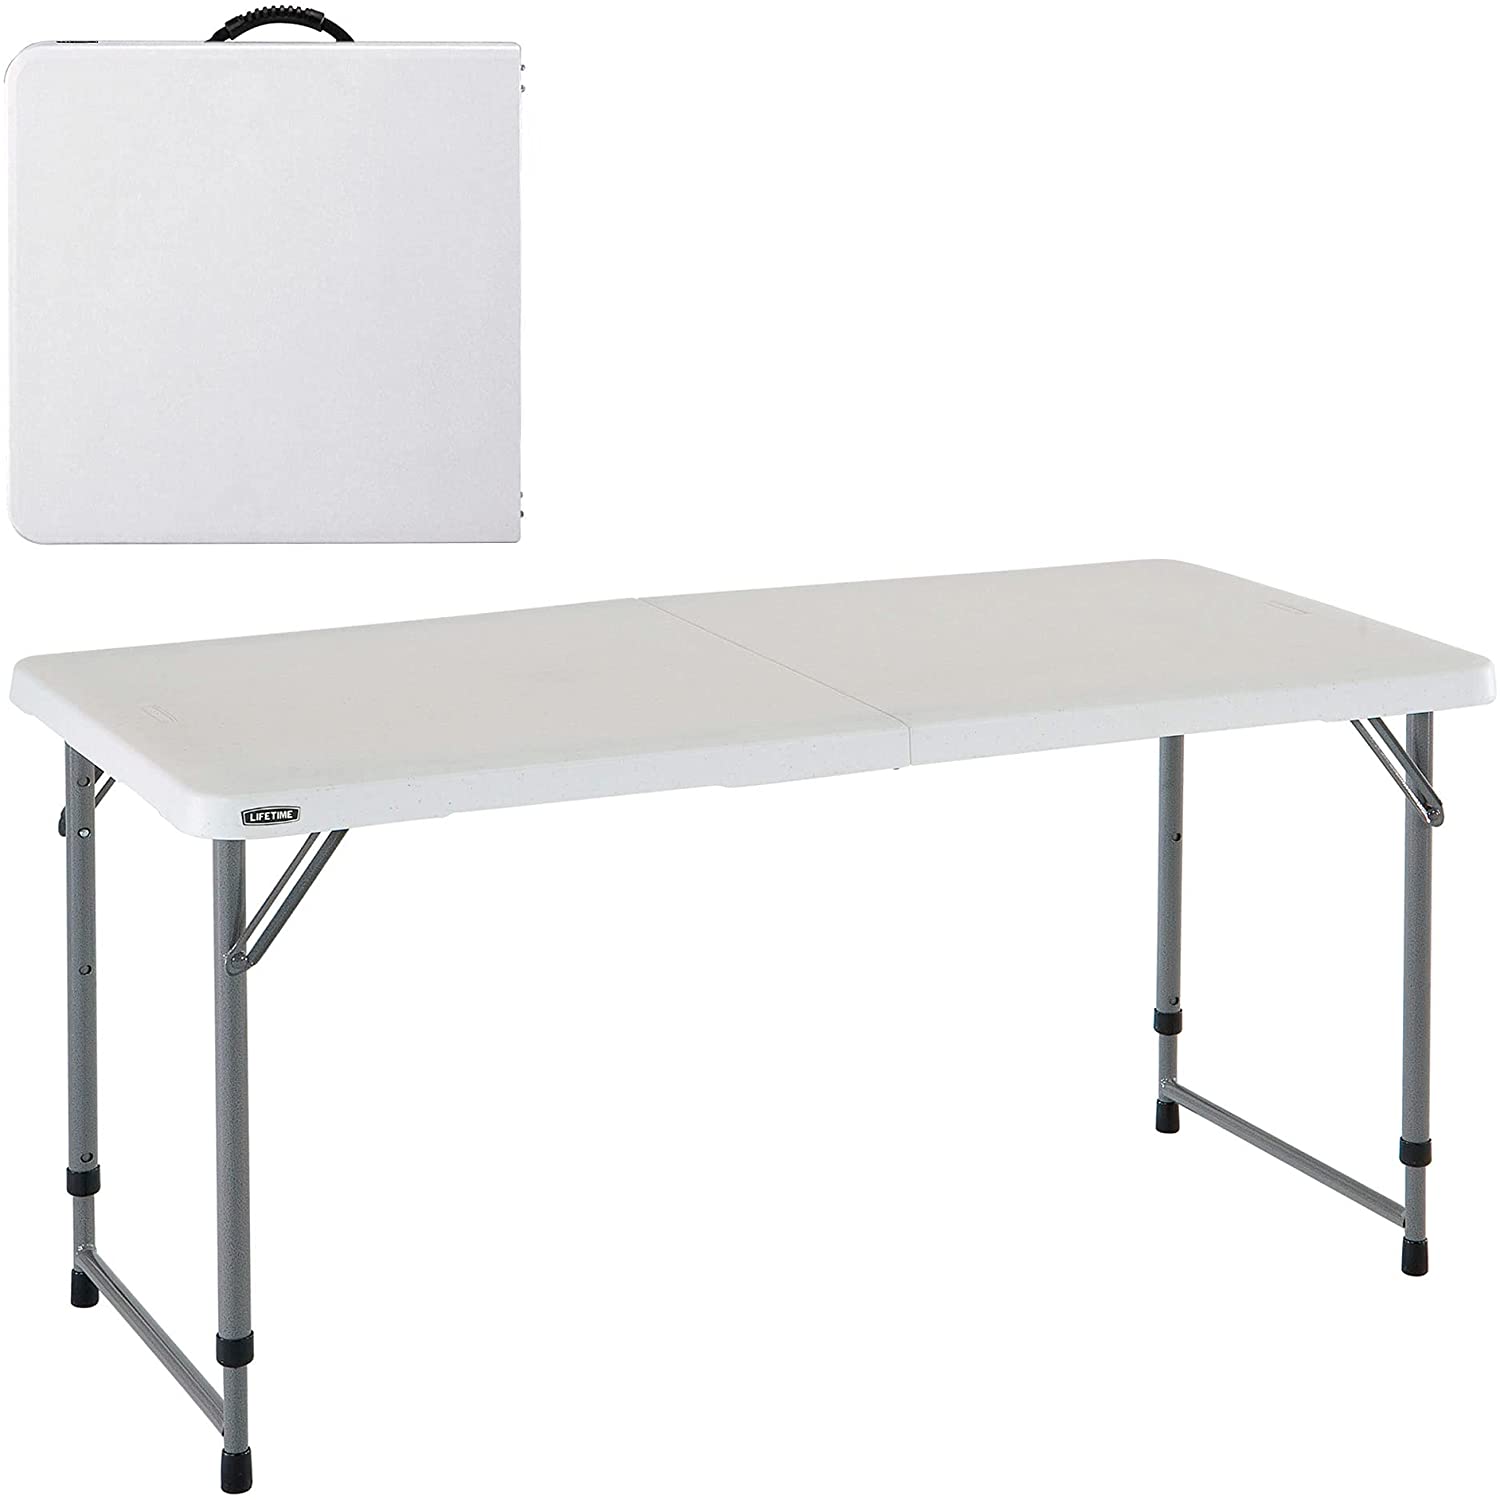 LIFETIME 4428 - Table pliante multifonctionnelle ultra résistante, UV100, 122x61x56 - 91,5 cm, blanc